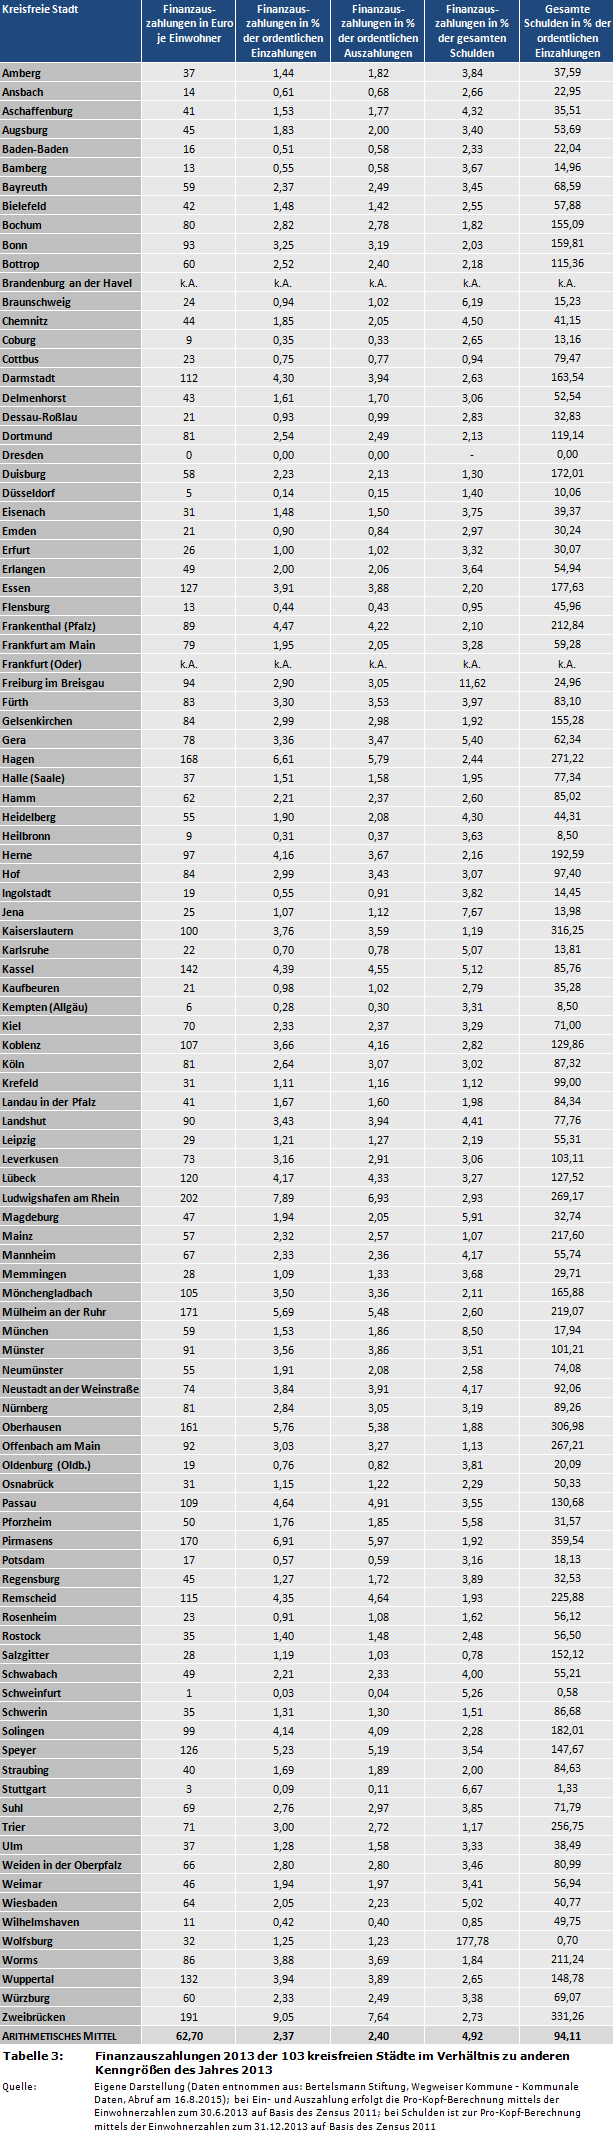 Finanzauszahlungen 2013 der 103 kreisfreien Städte im Verhältnis zu anderen Kenngrößen des Jahres 2013